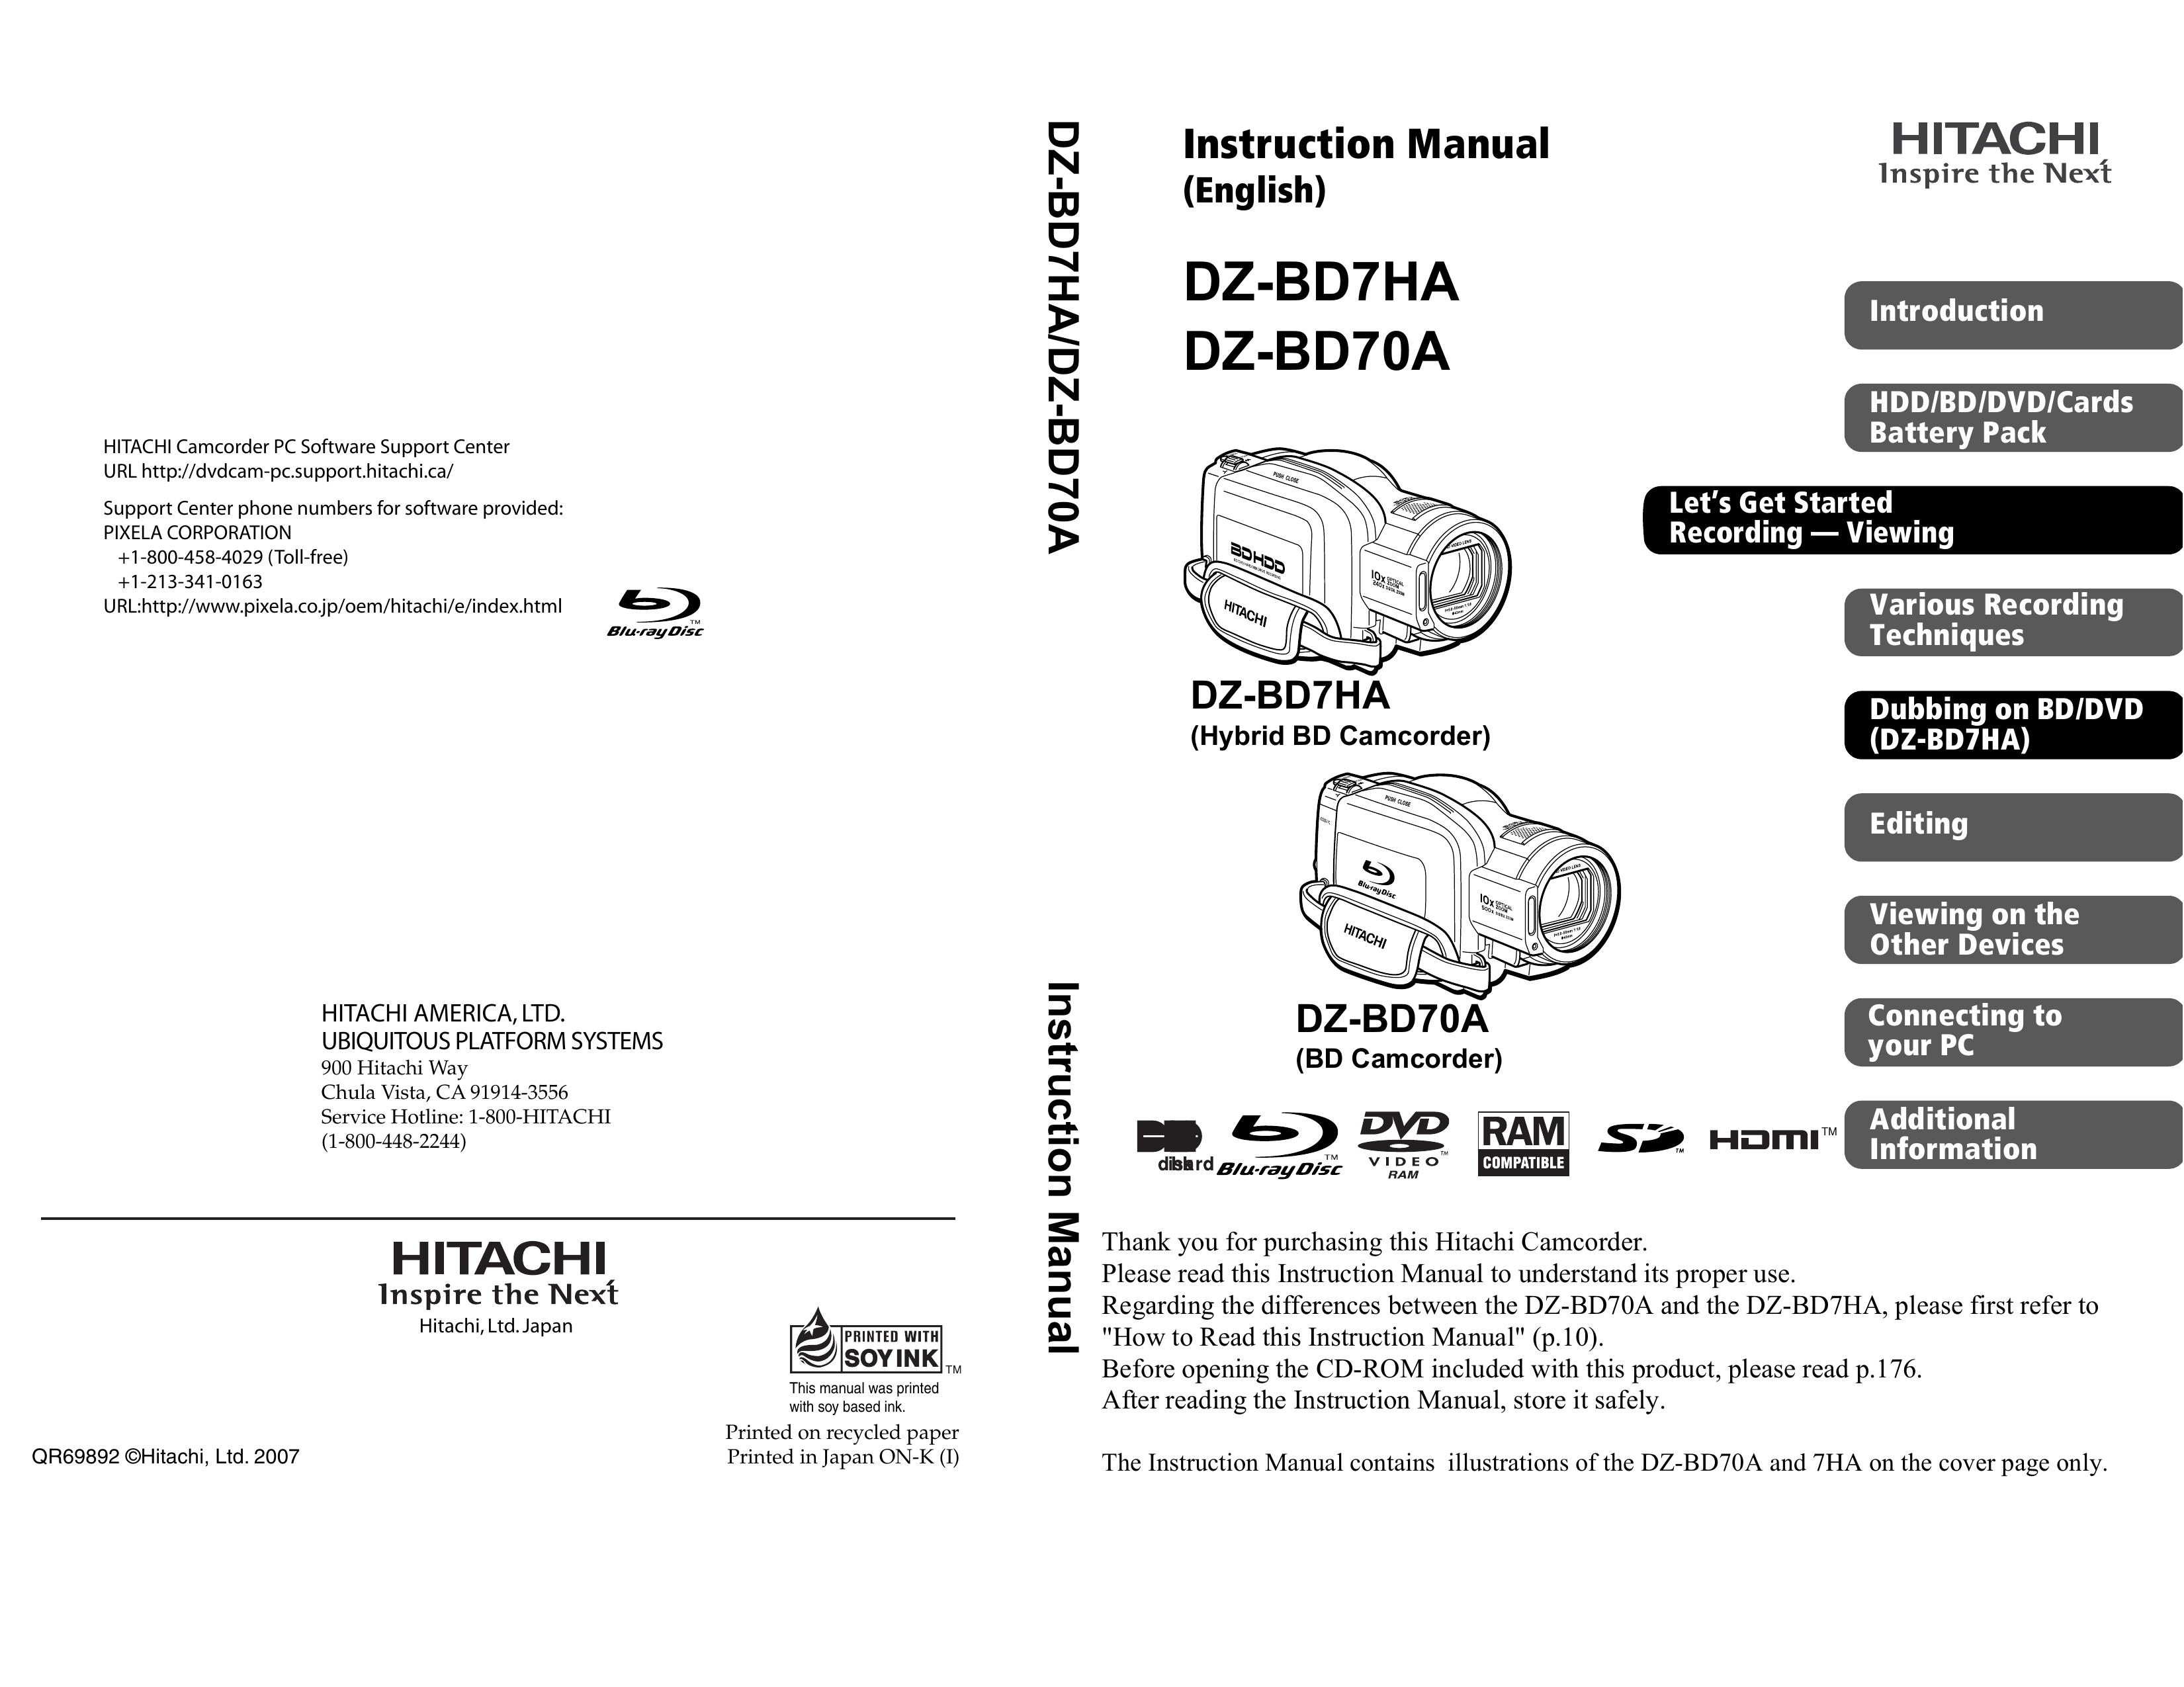 Hitachi DZ-BD70A Camcorder User Manual